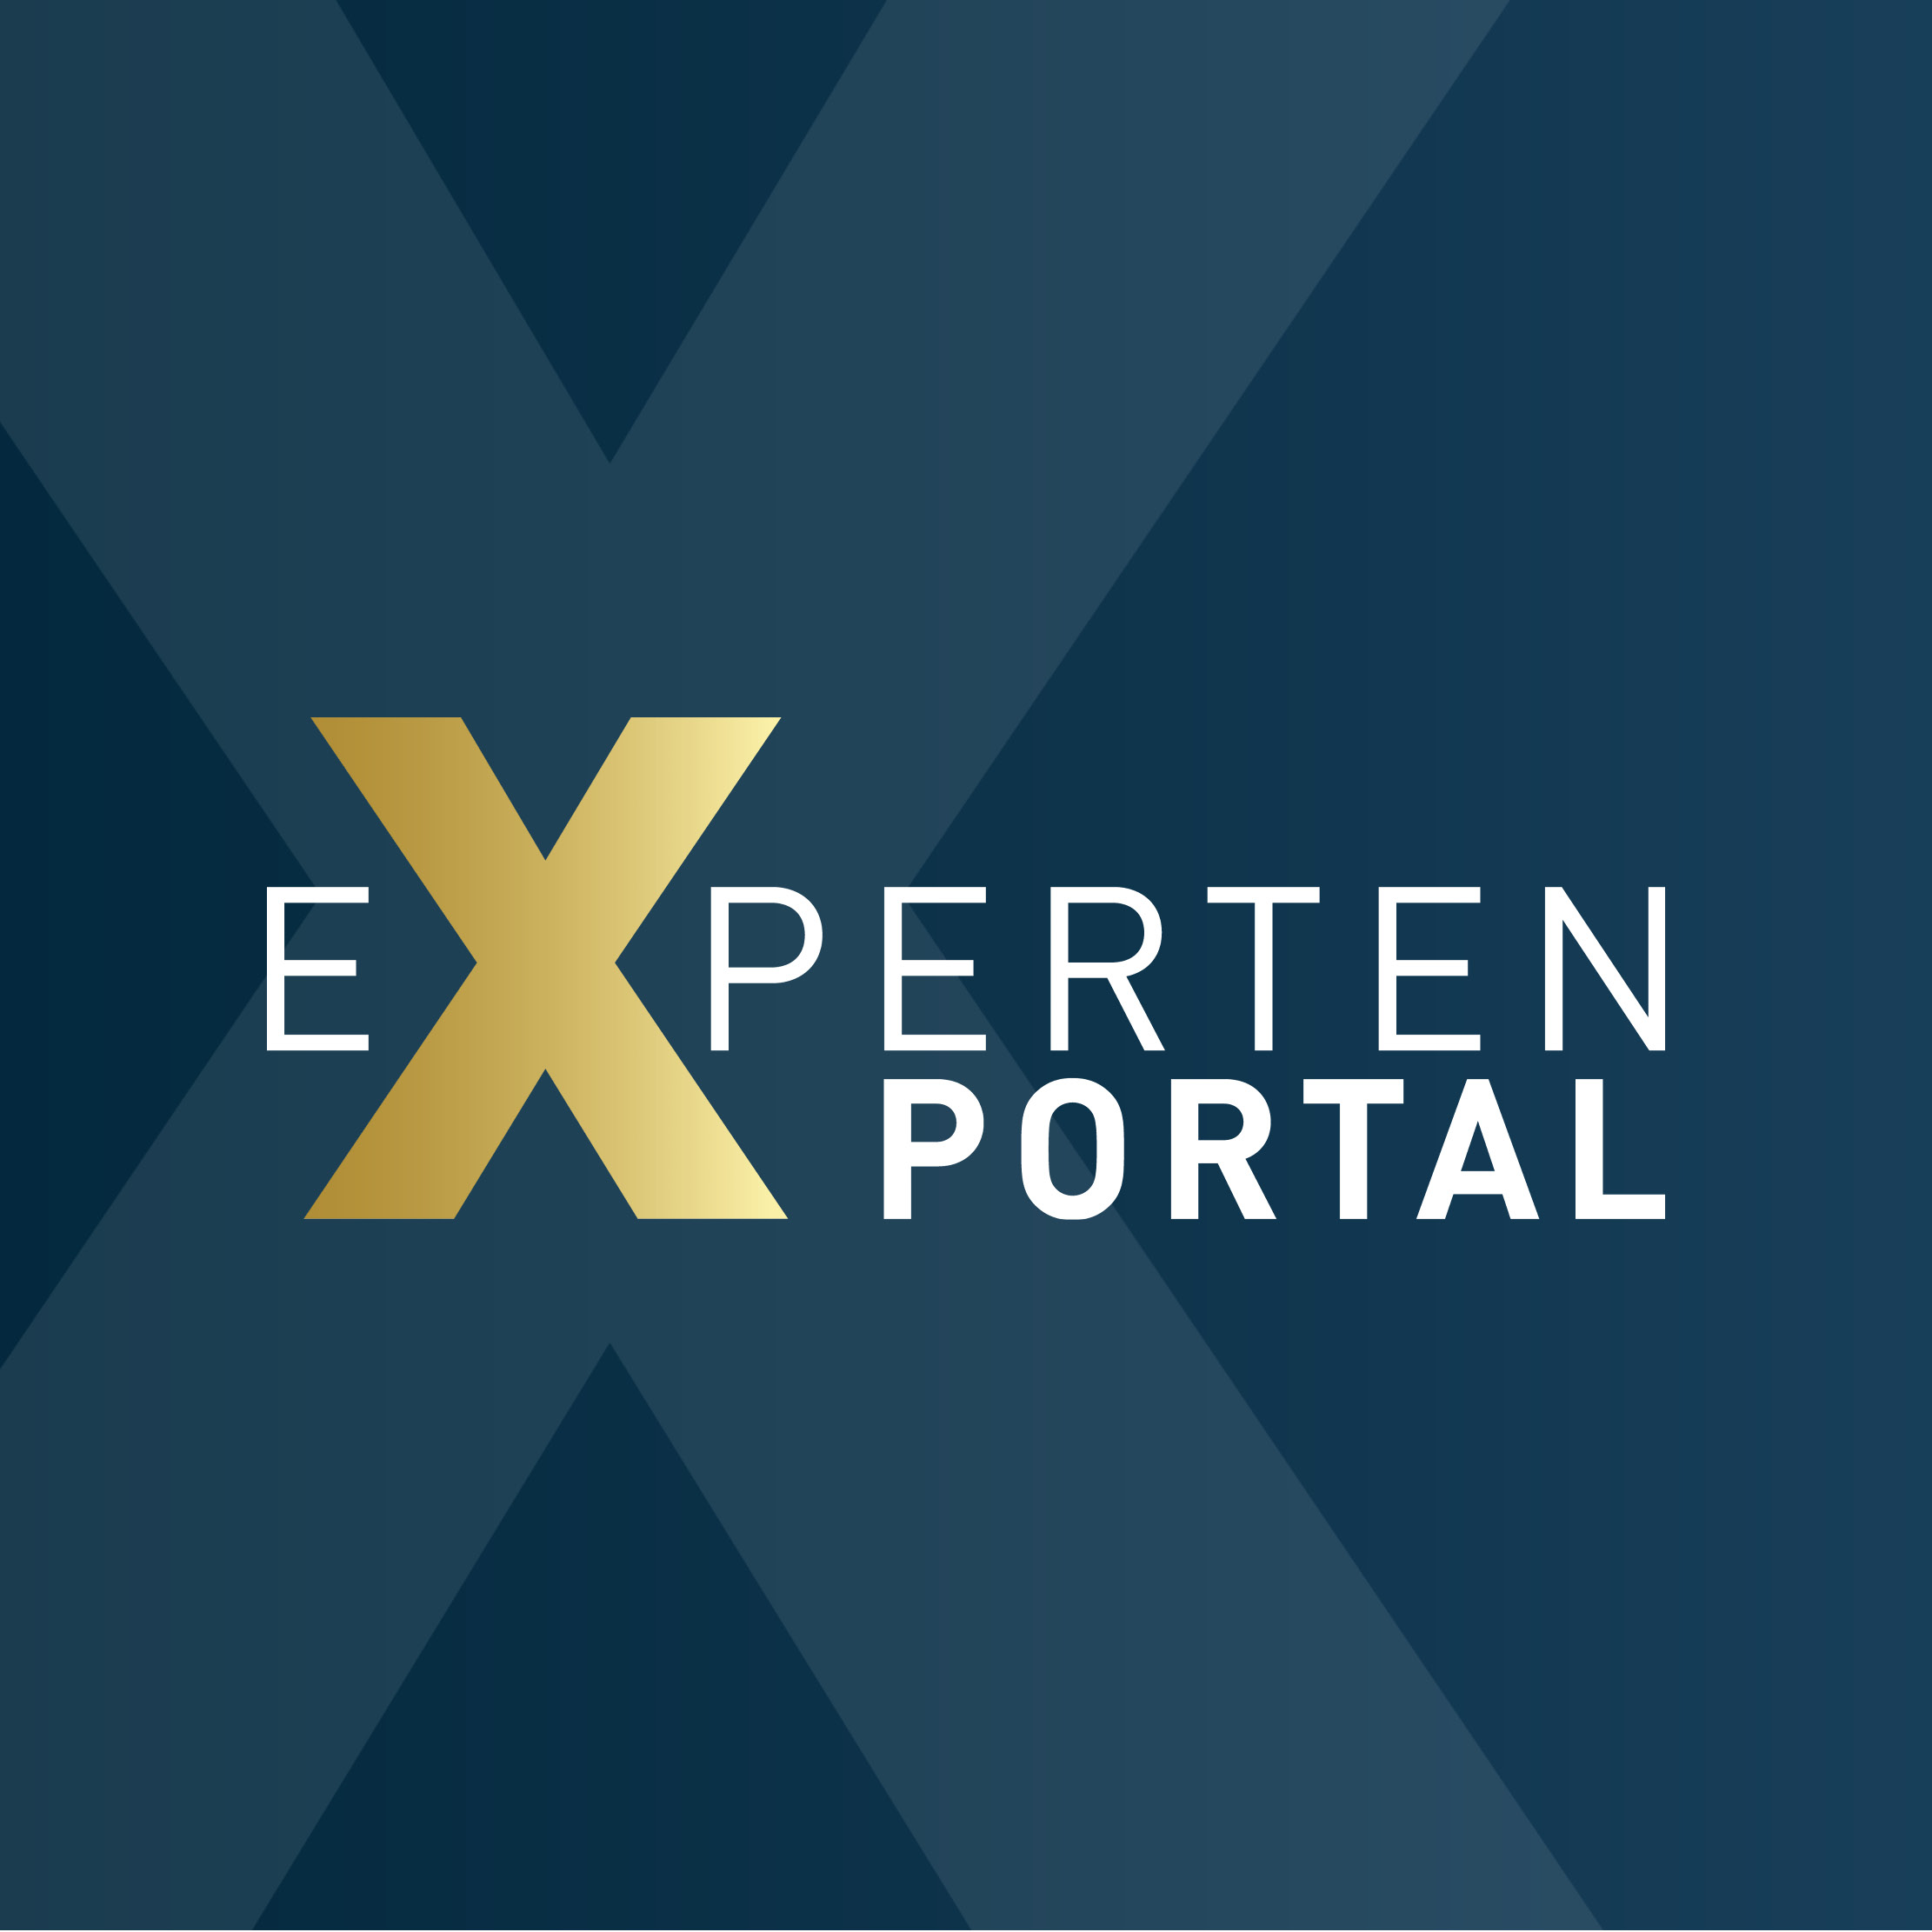 Letter-Logo des Expertenportals, verlinkt mit dem dortigen Profil von Robert Böttcher.